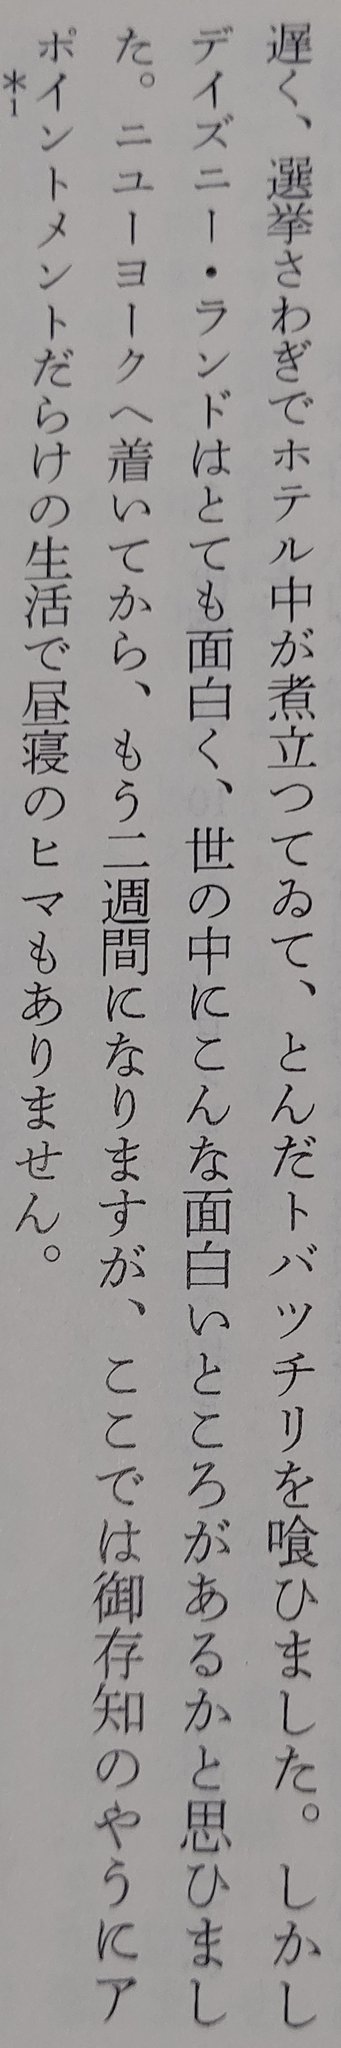 モフスキ 三島由紀夫 ディズニー ランドはとても面白く 世の中にこんな面白いところがあるかと思ひました かわいいか T Co Gicx37j3gg Twitter